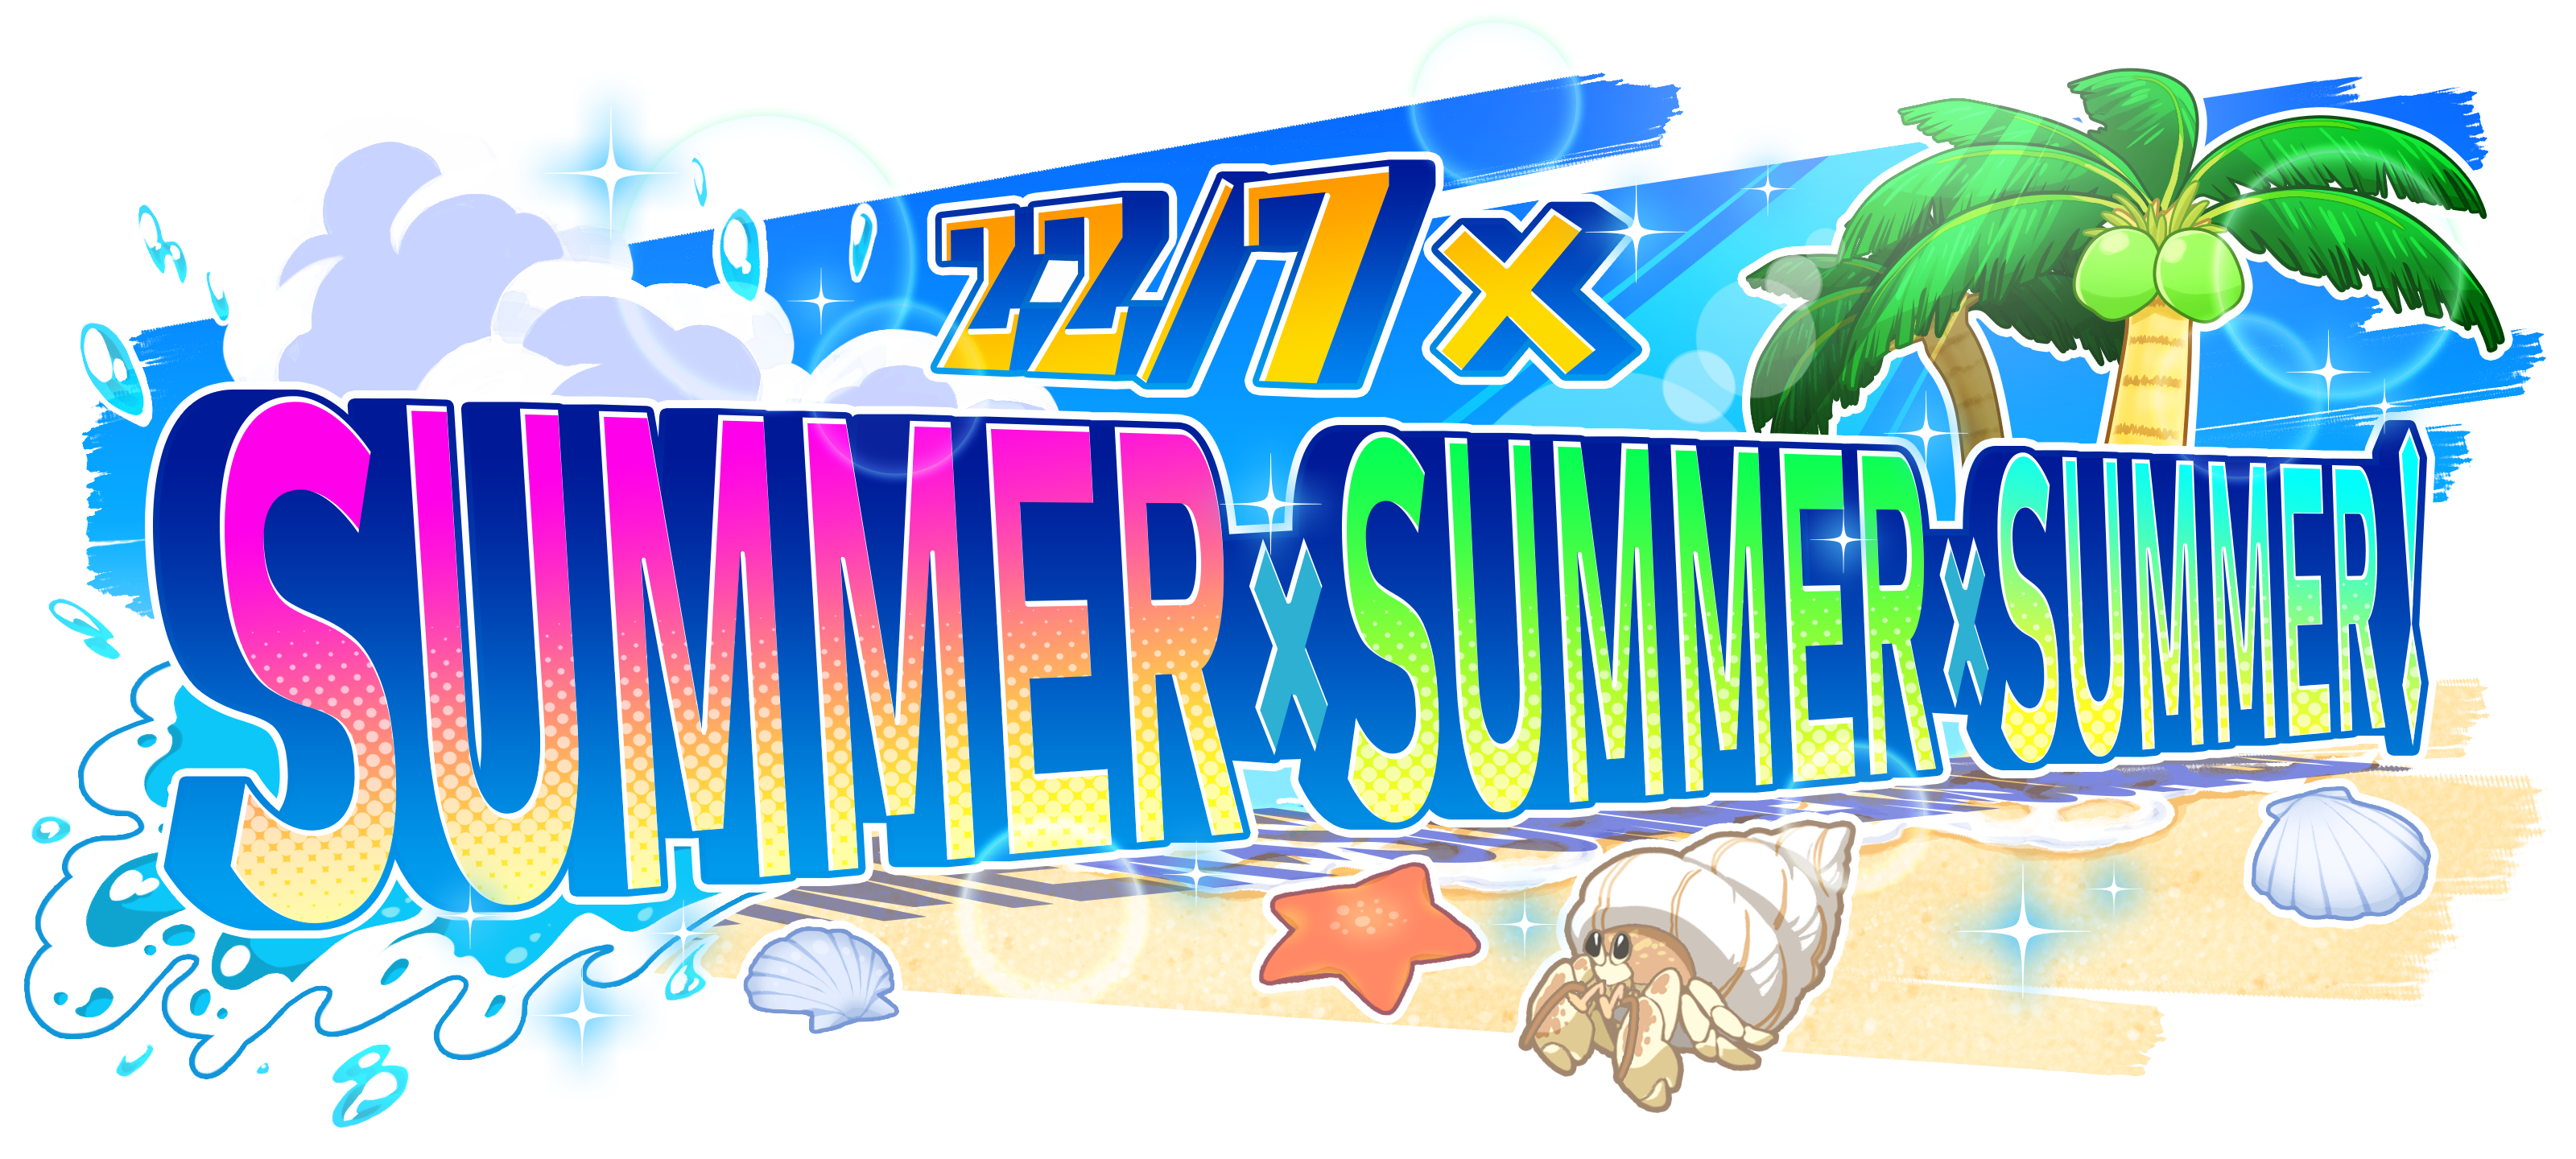 リズムゲームアプリ 22 7 音楽の時間 にて 初の水着イベント 22 7 Summer Summer Summer 開催決定 株式会社アニプレックスのプレスリリース